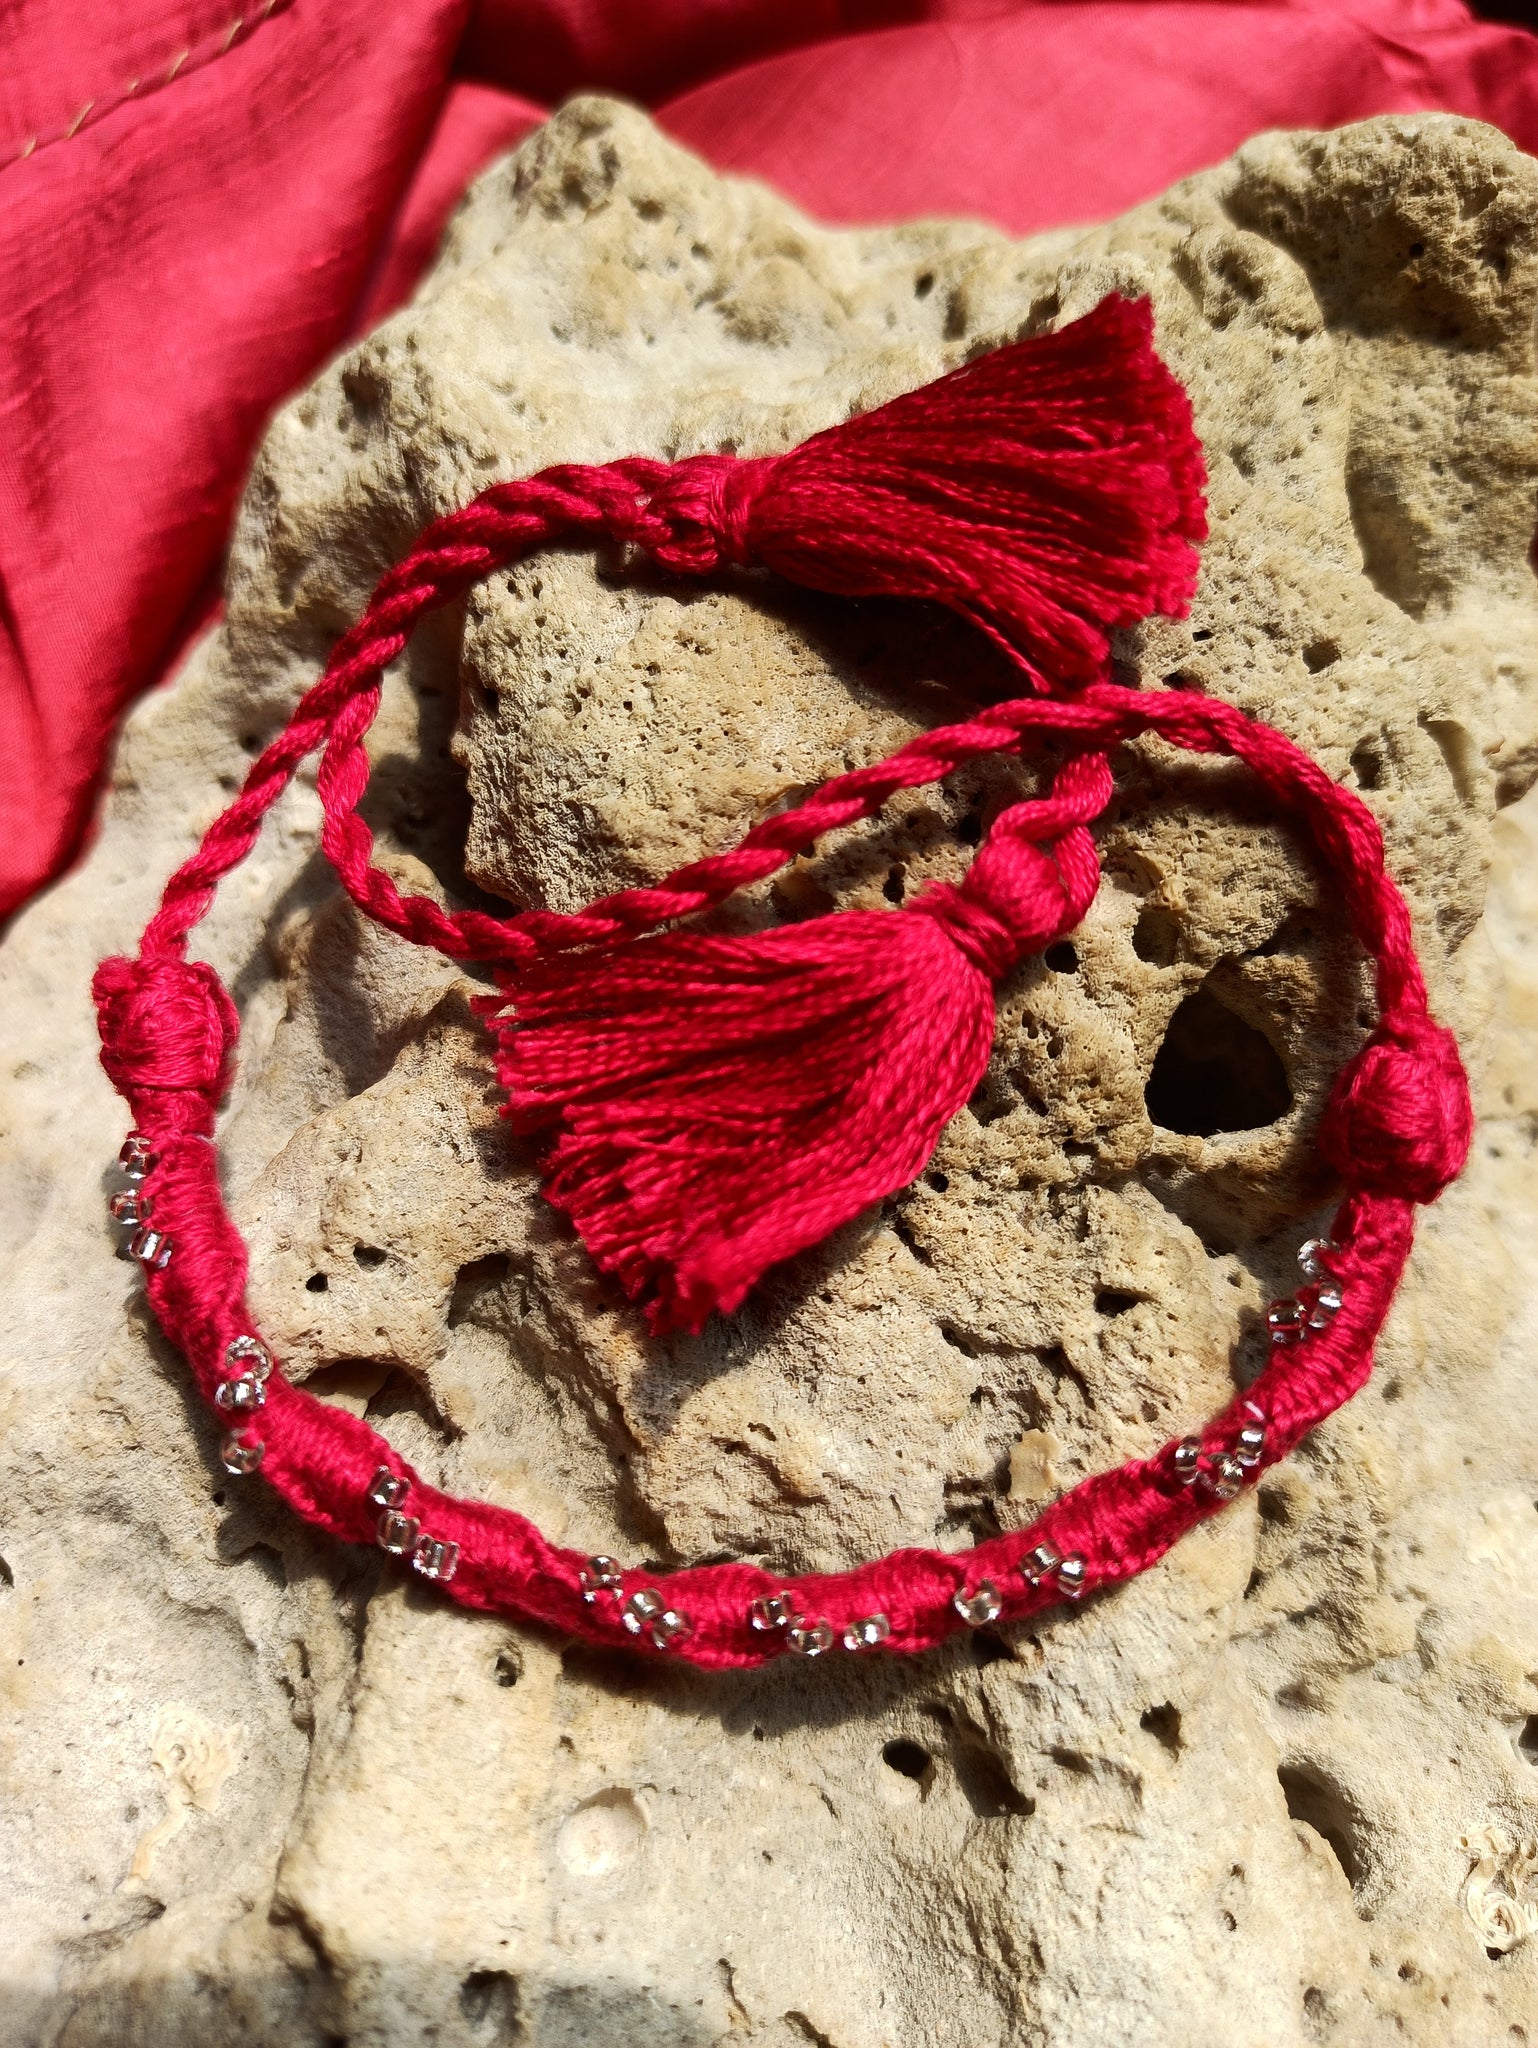 Twisted Threads and Beads Bracelet Style Rakhi